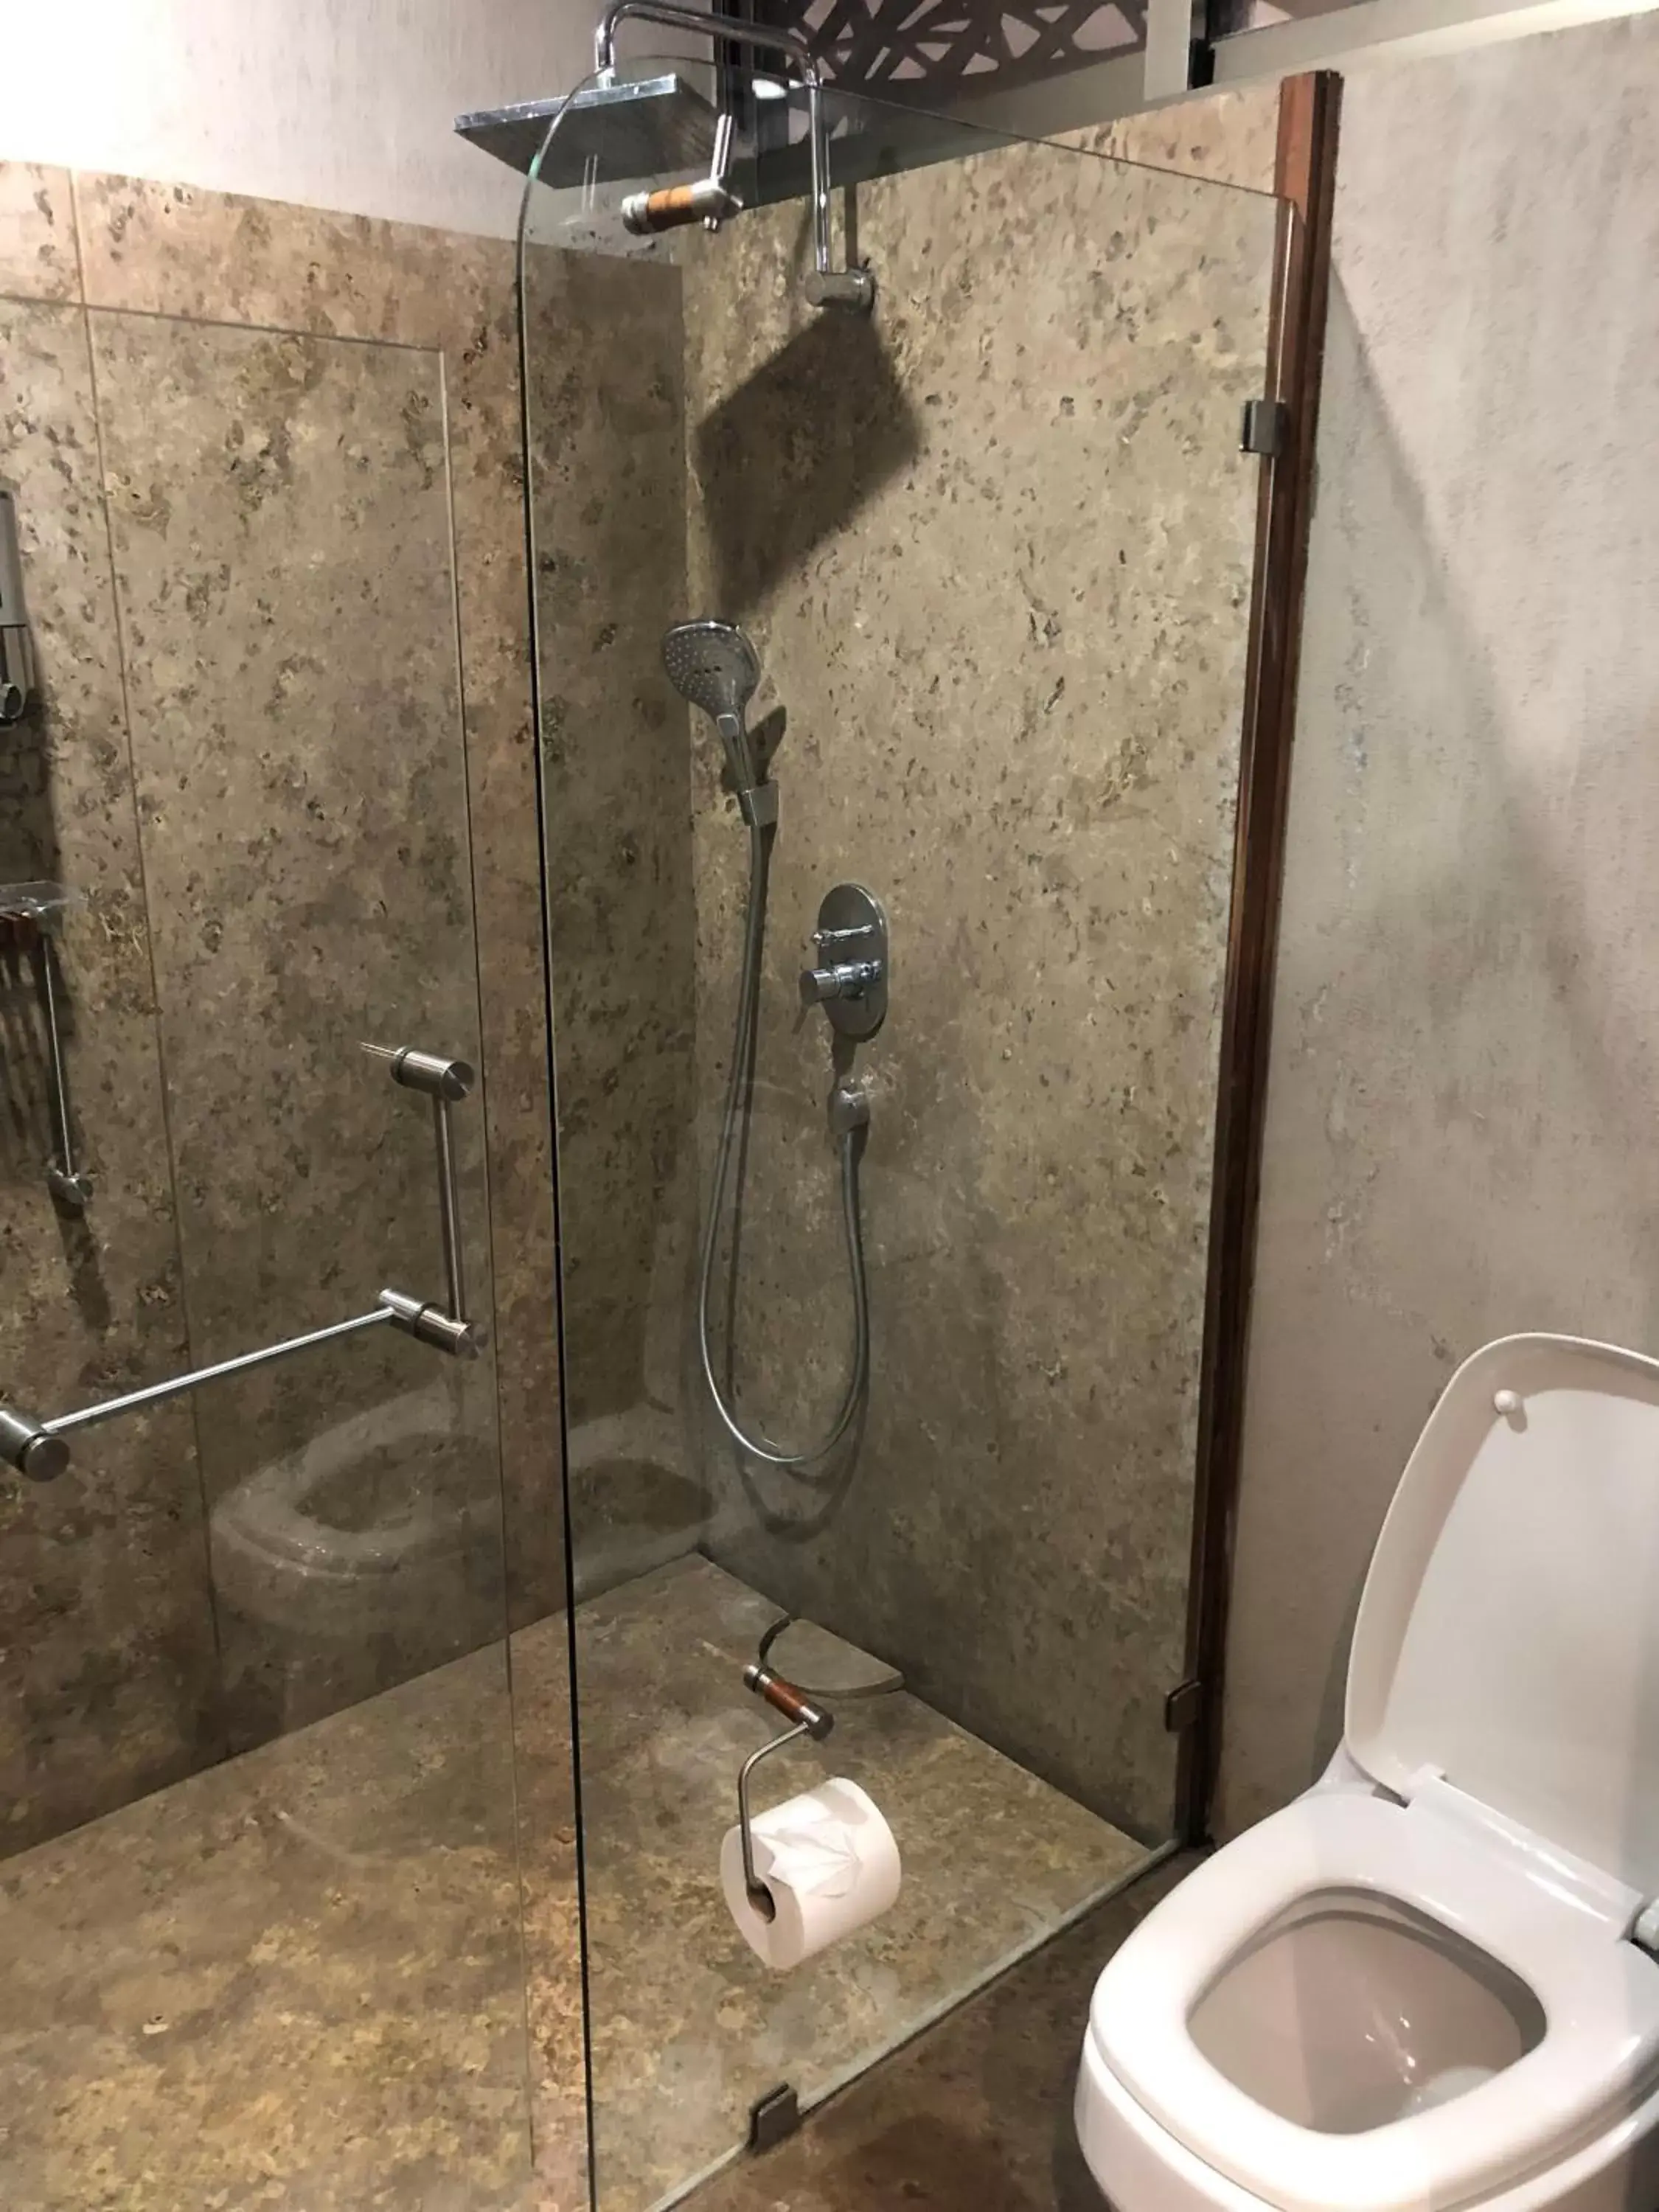 Toilet, Bathroom in Gamma Monterrey Rincon de Santiago